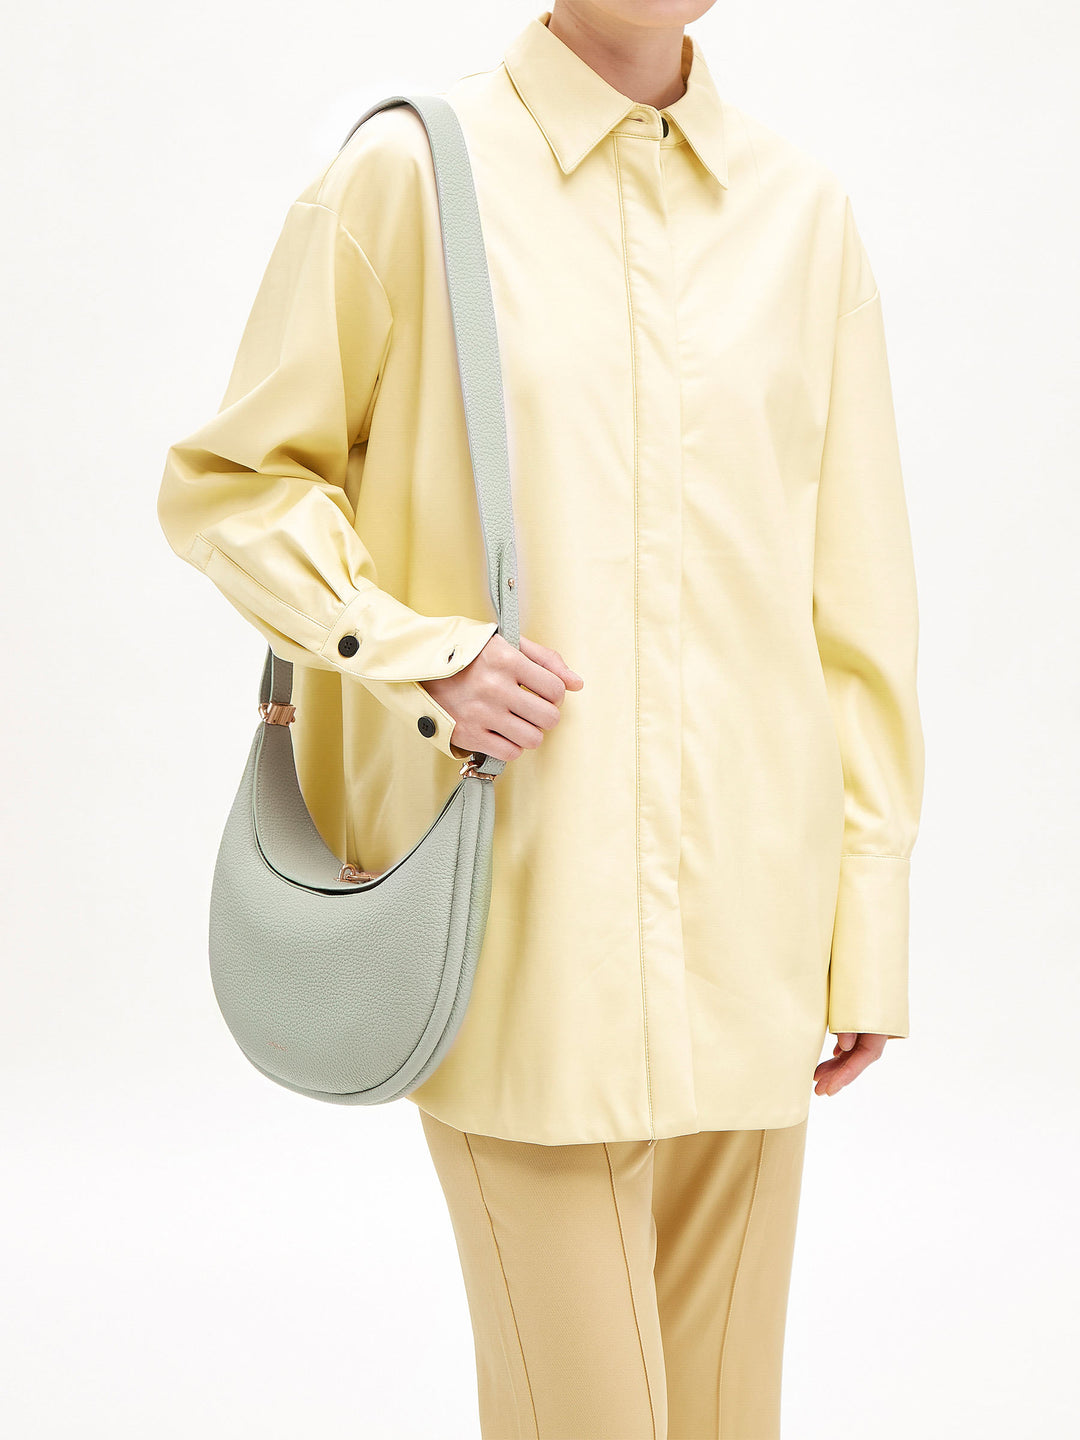 Luna Bag | Jade Cowhide Curved Shoulder Bag | Songmont